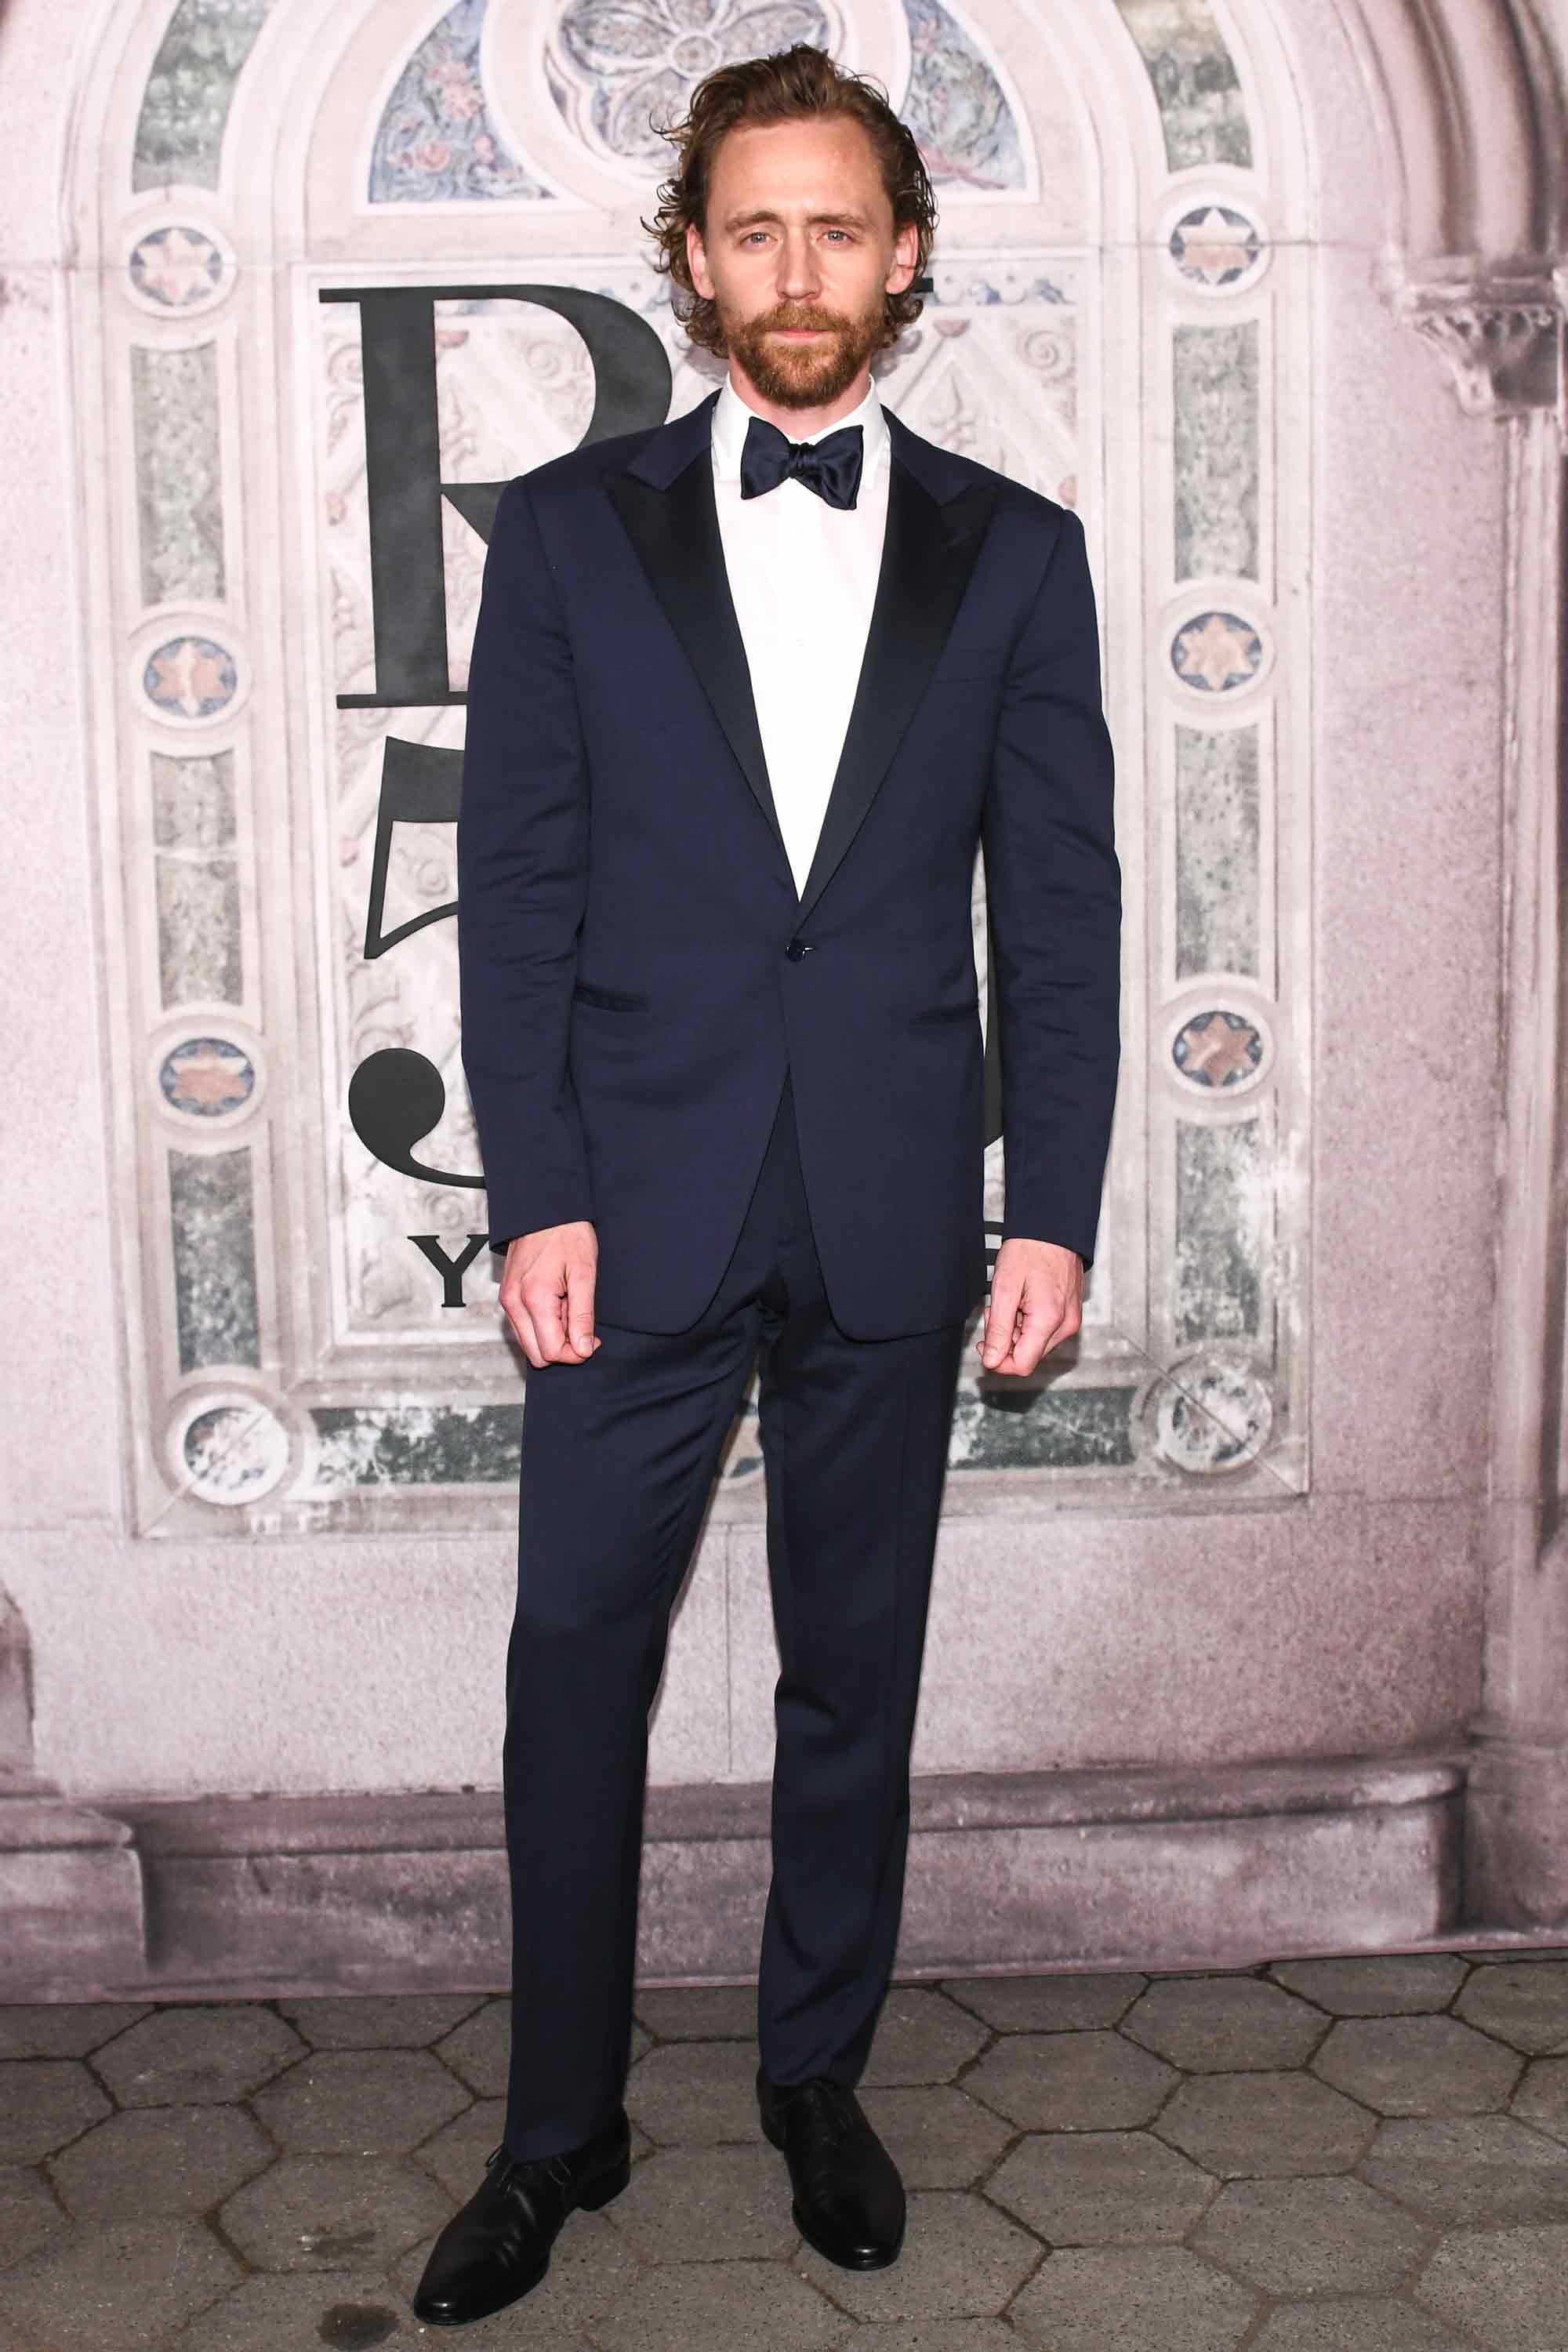 Khép lại danh sách các ngôi sao ăn mặc ấn tượng tại tuần lễ thời trang New York Xuân-Hè 2019 là chàng diễn viên quen thuộc Tom Hiddleston trong bộ suit và chiếc nơ kinh điển của mọi quý ông. Ảnh: GQ